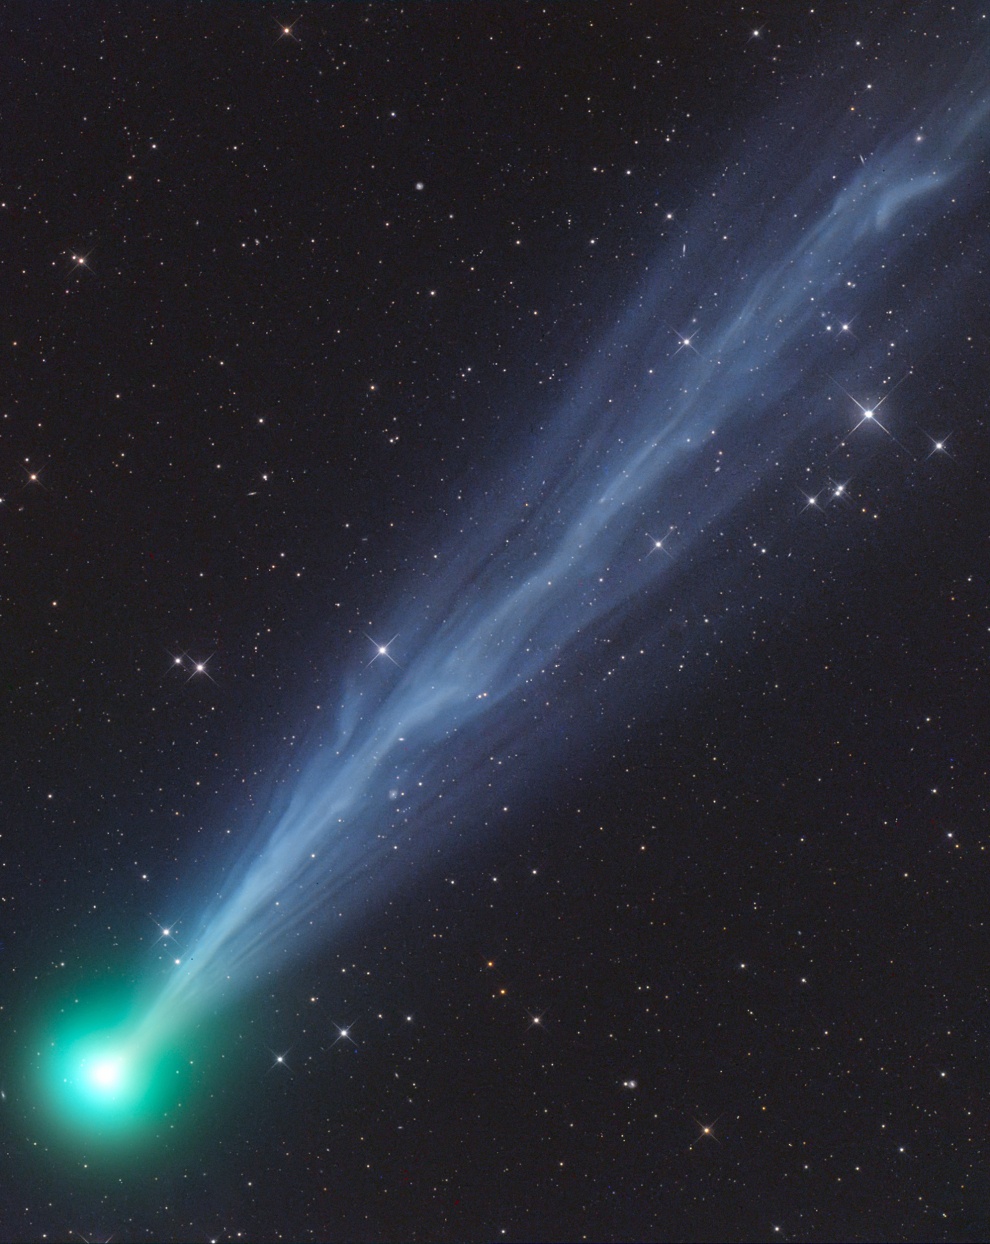 El año 2020 estuvo marcado por el brillante cometa NEOWISE. Pero a mediados de abril, el fotógrafo esperaba el cometa C / 2020F8 SWAN, que tuvo una aparición espectacular en el cielo austral a mediados de mayo. Cuando apareció en el cielo del norte después de su perihelio, este cometa se desintegró. Tivoli Farm, Khomas, Namibia, 1 de mayo de 2020